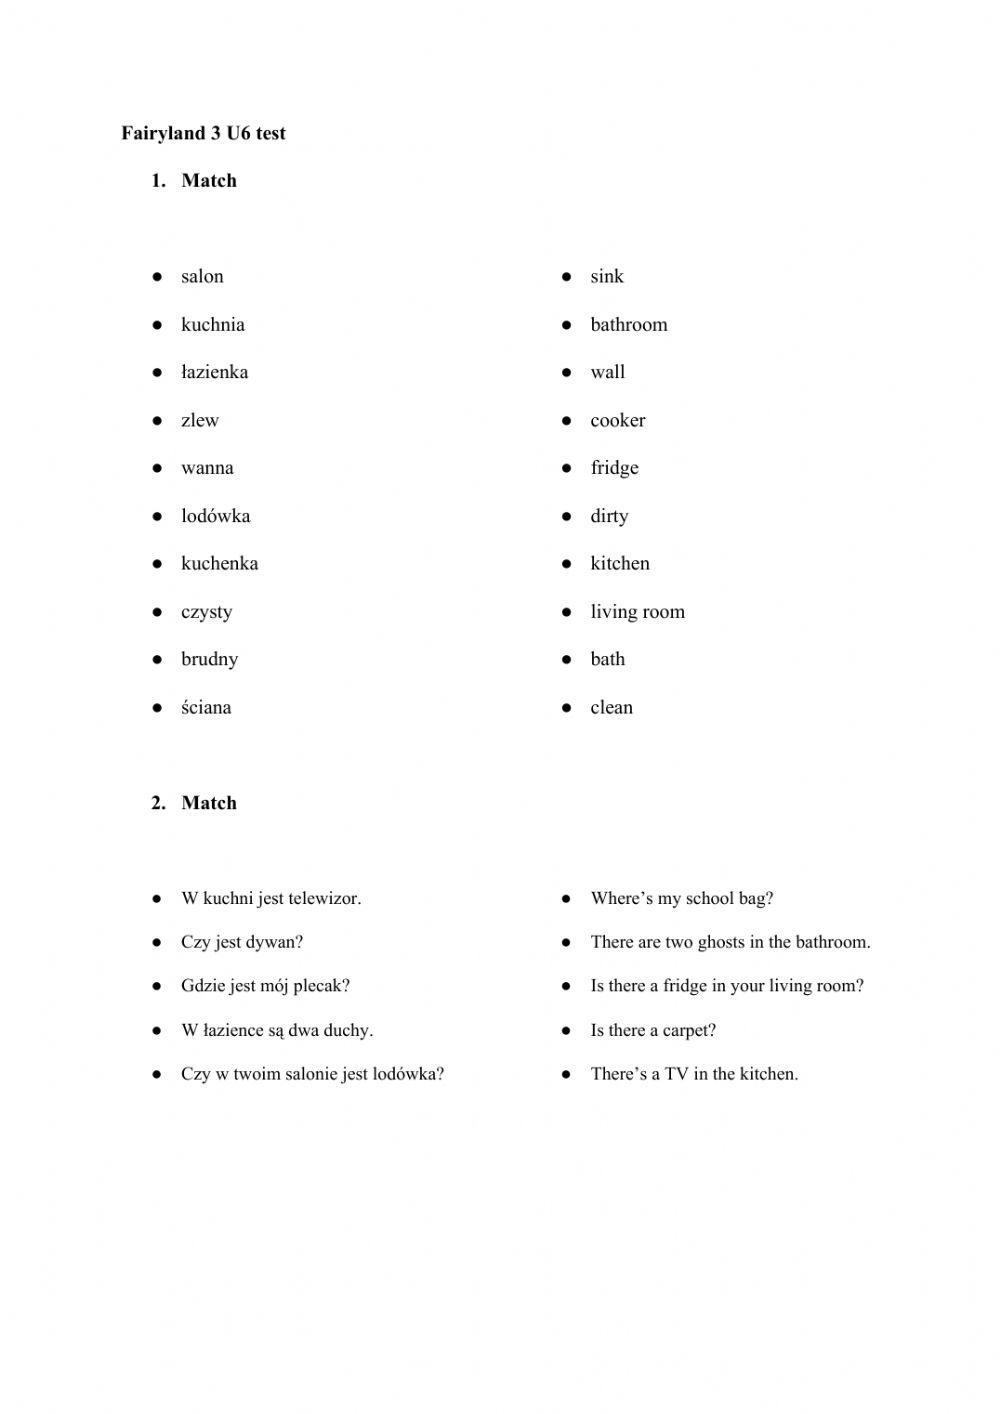 Fairyland 3 U6 Vocabulary test worksheet | Live Worksheets